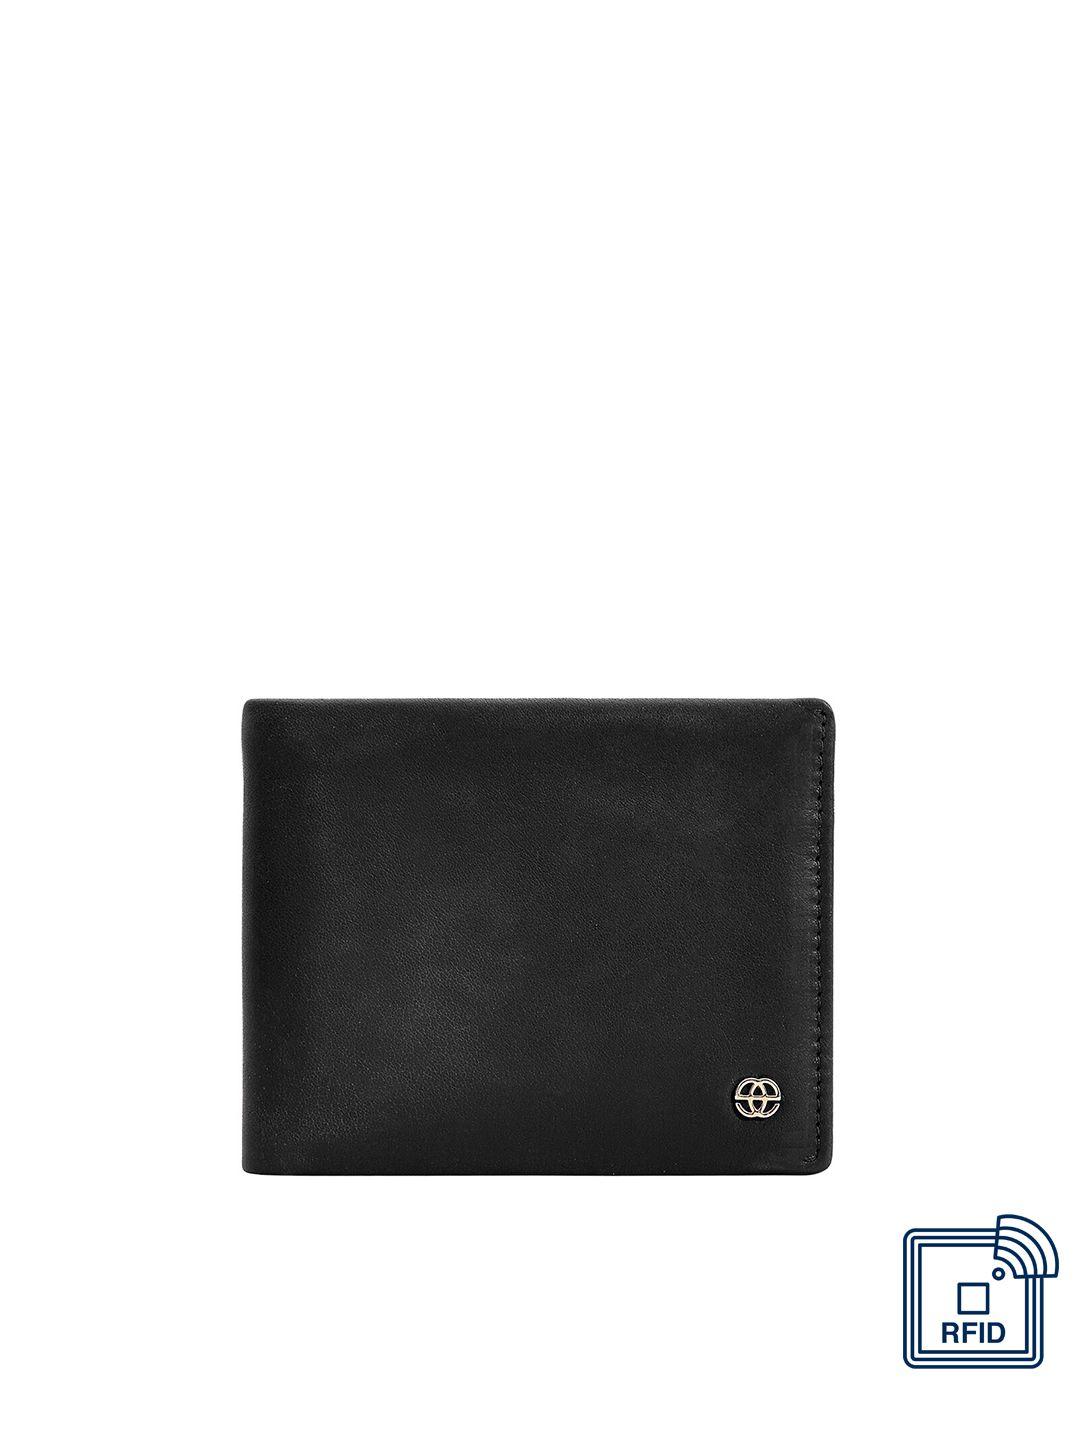 eske men black leather two fold wallet